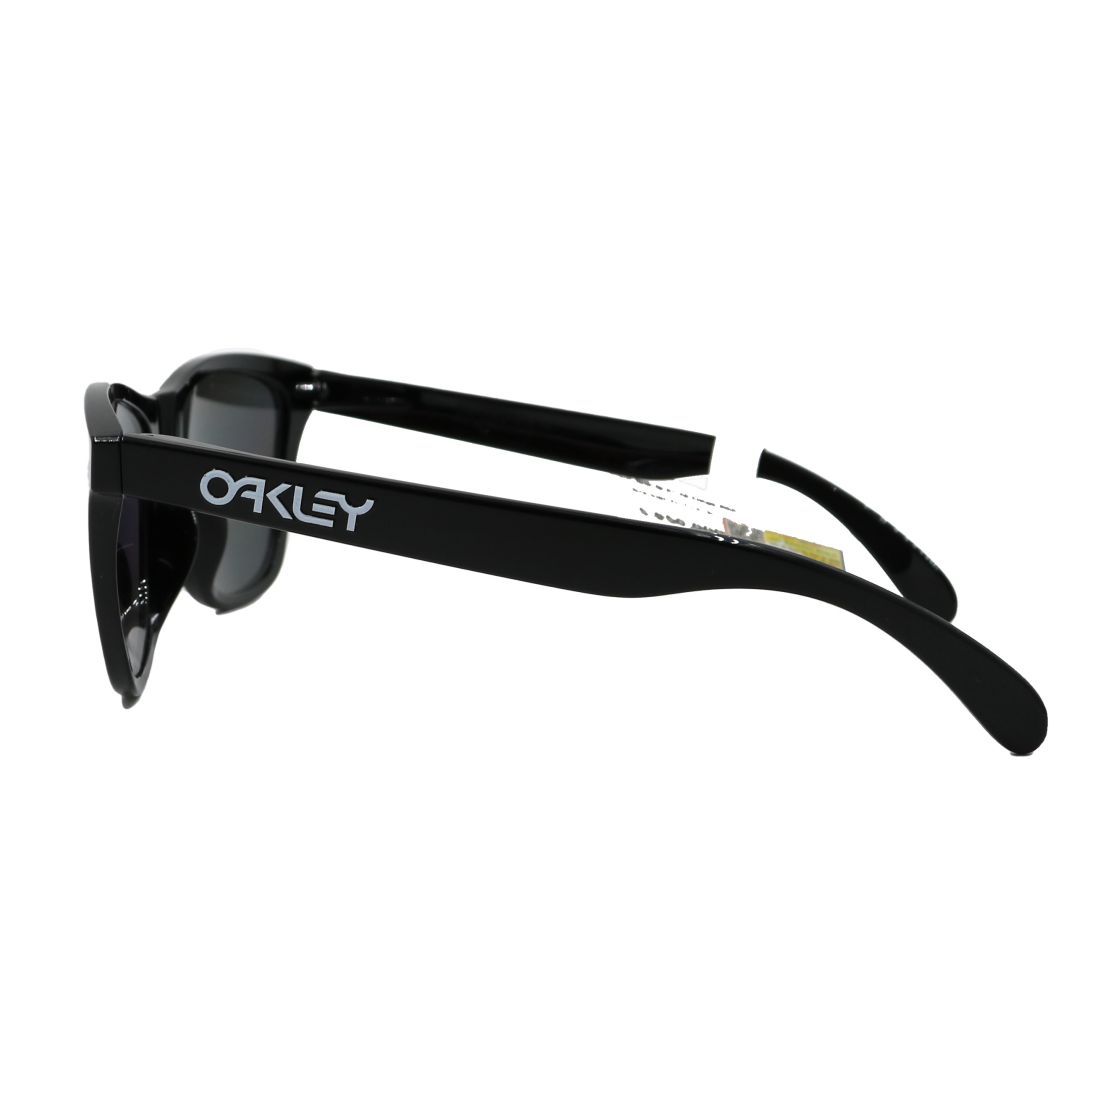  Kính mát Oakley OO9245 02 + Tặng phiếu mua tròng trị giá 500.000 vnđ 